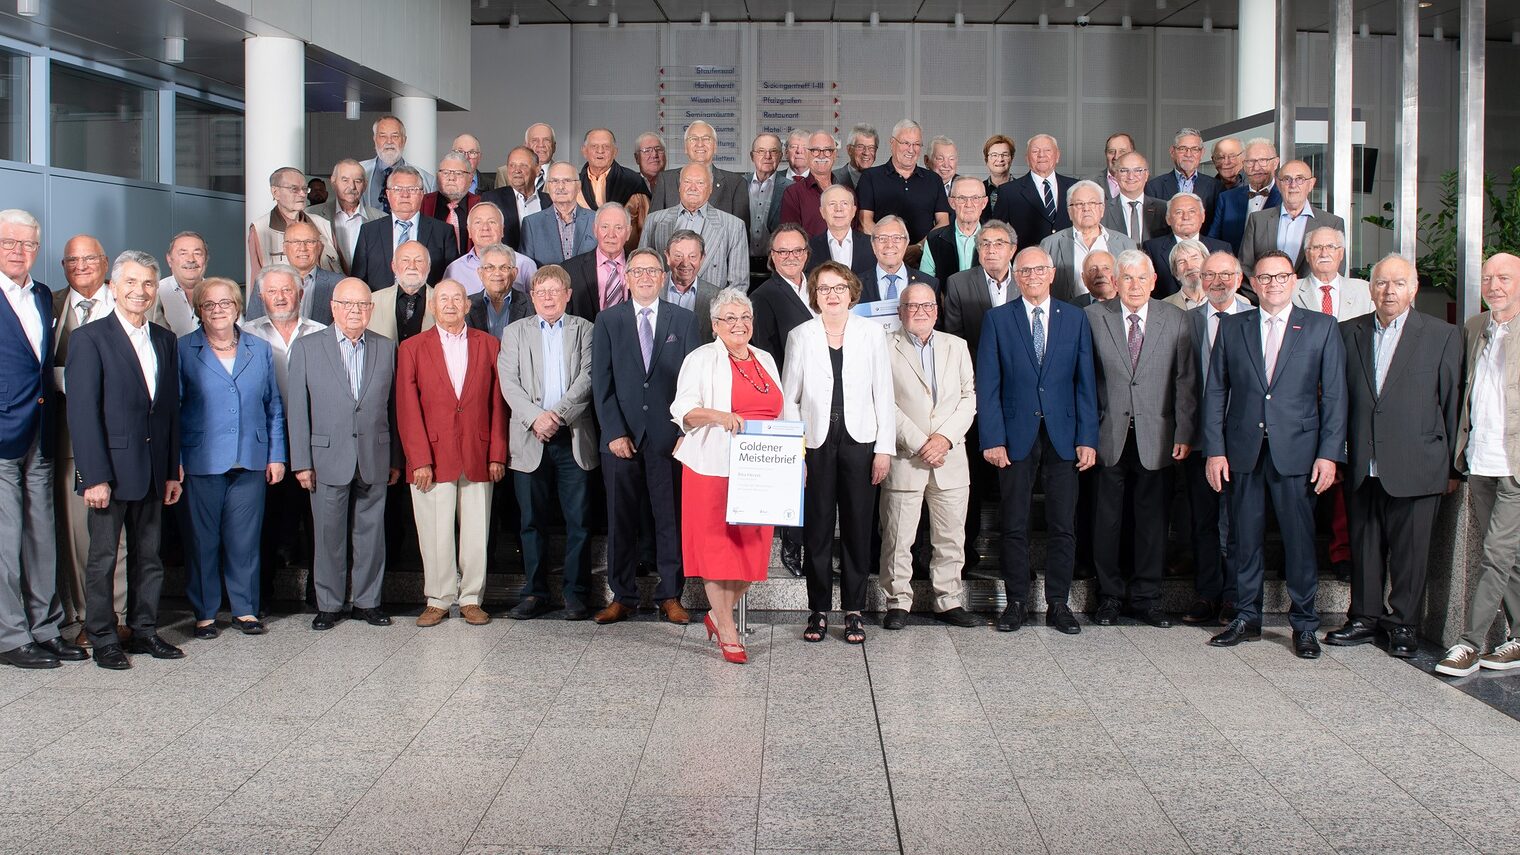 Gruppenbild der Jubilare aus dem Rhein-Neckar-Kreis, die 2022 ihre goldene Meisterschaft mit 50 Jahren Handwerksmeister feiern